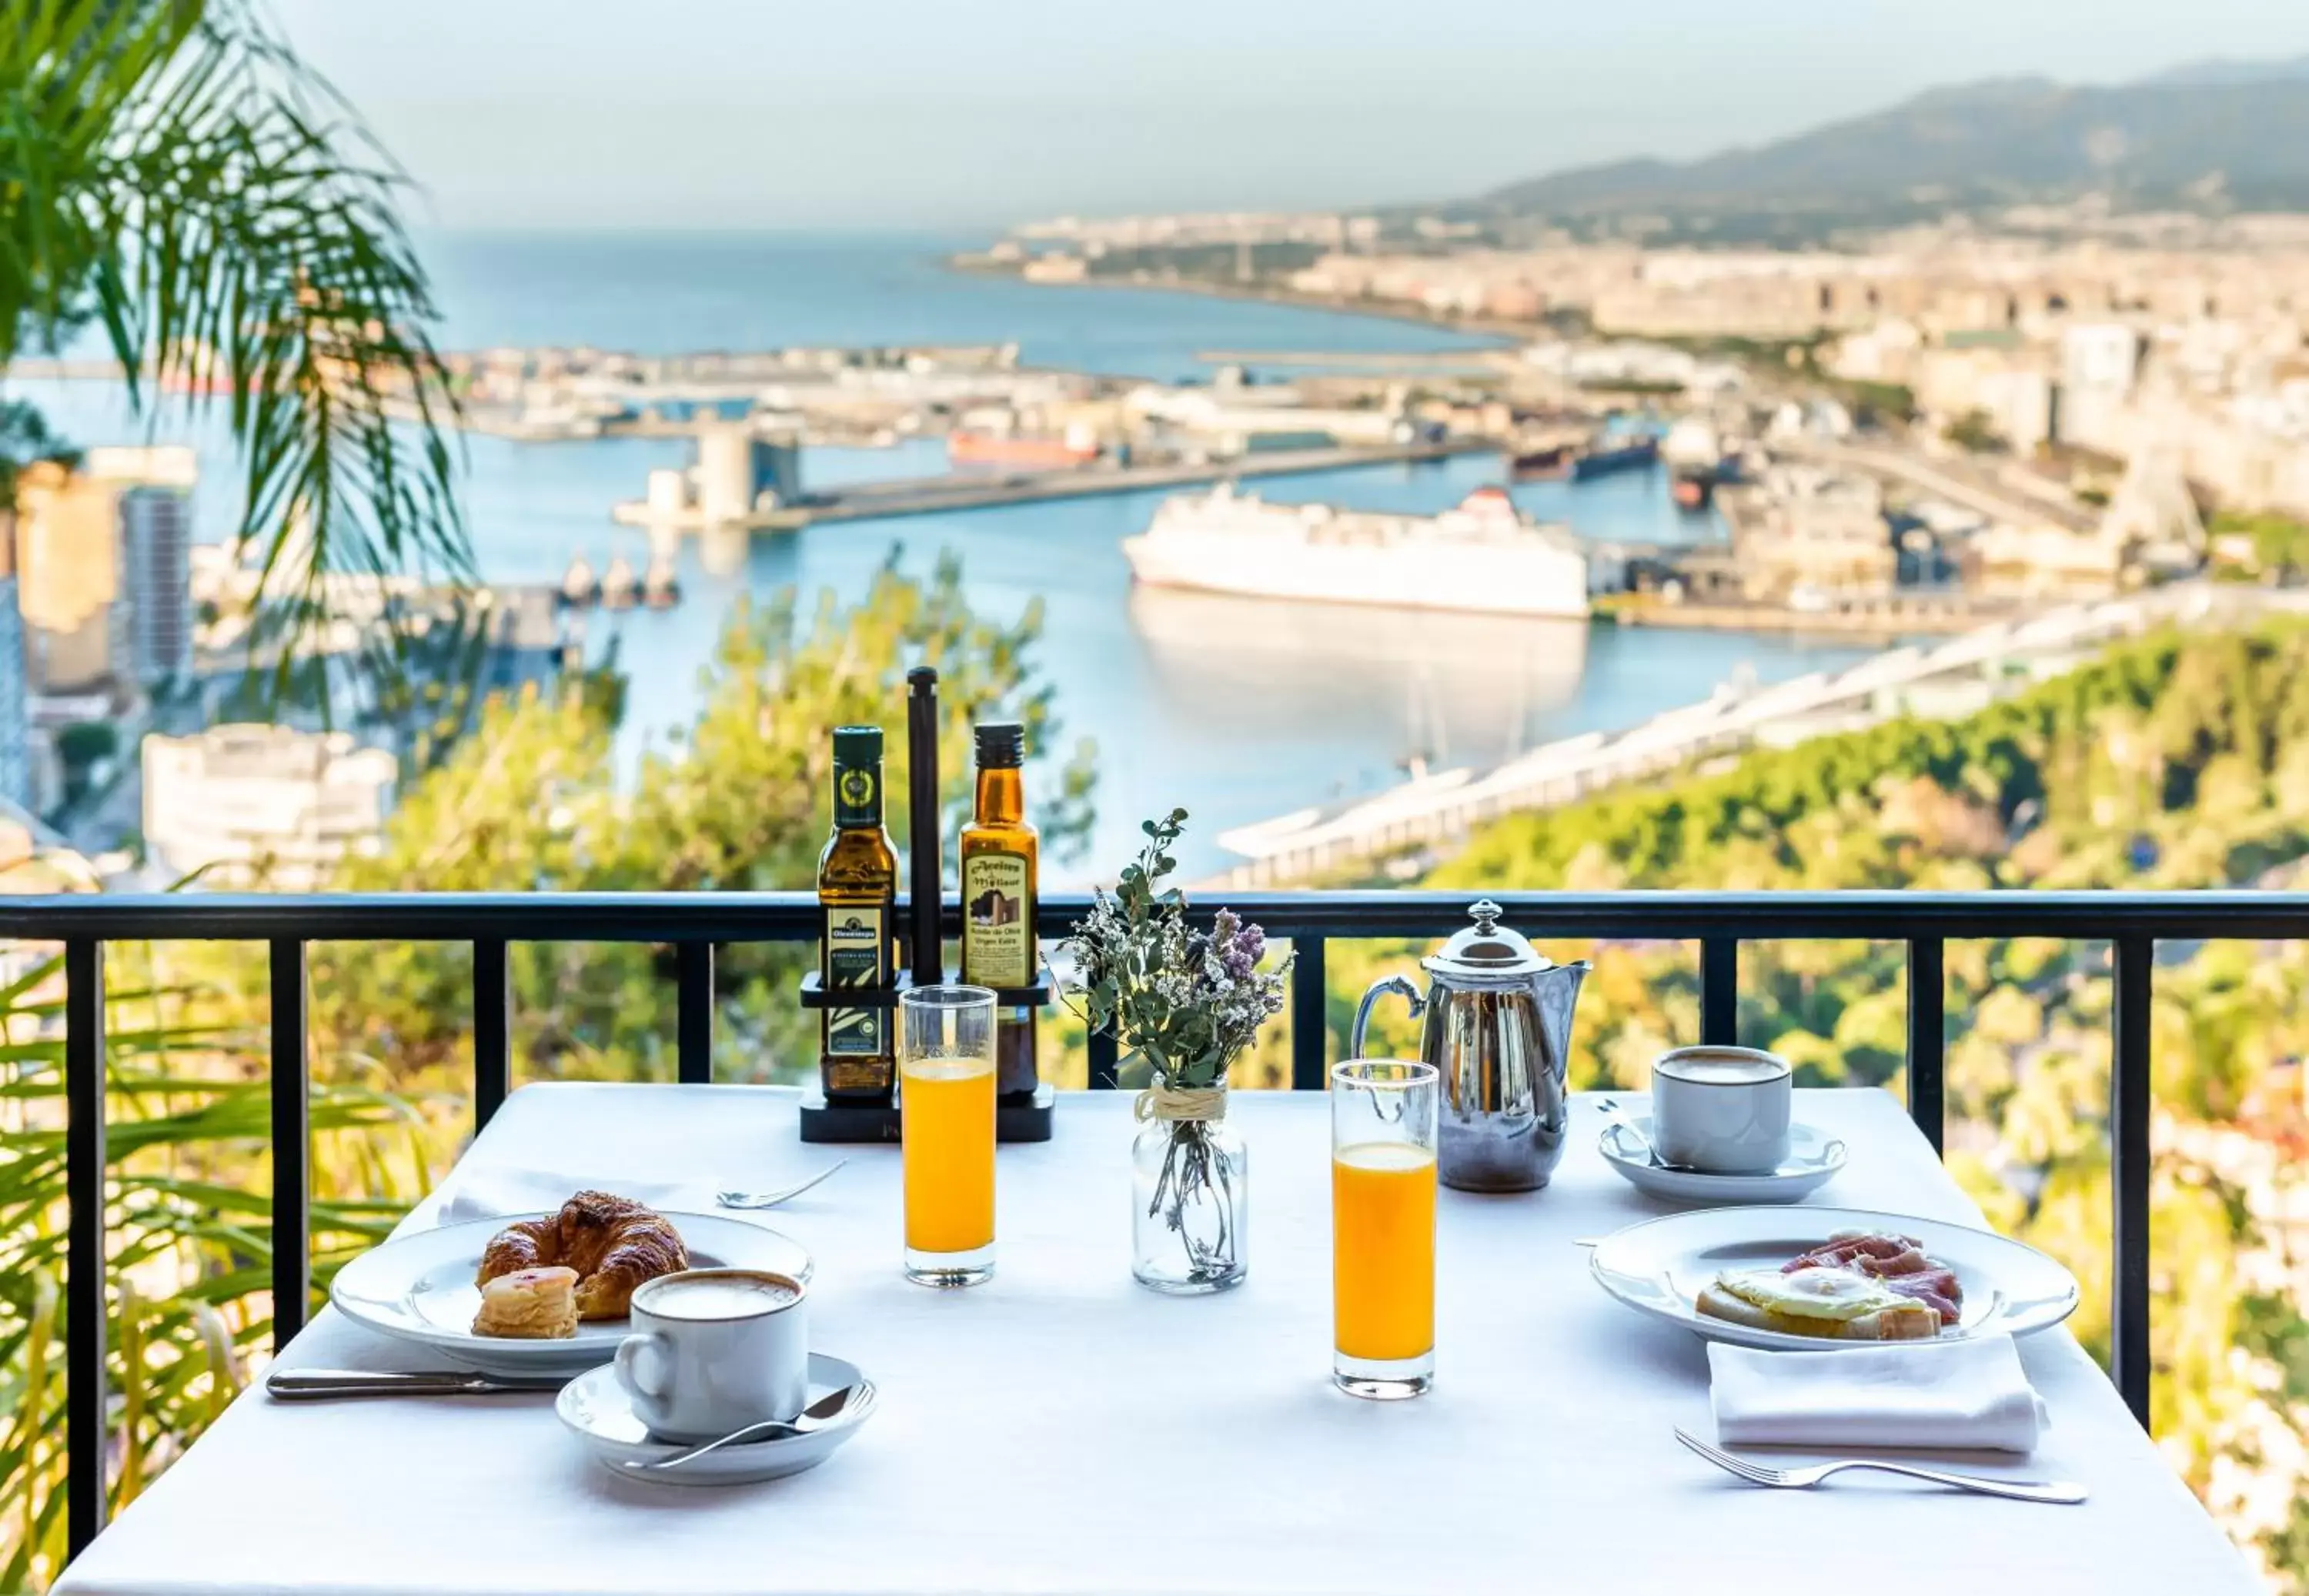 Restaurant/places to eat in Parador de Málaga Gibralfaro